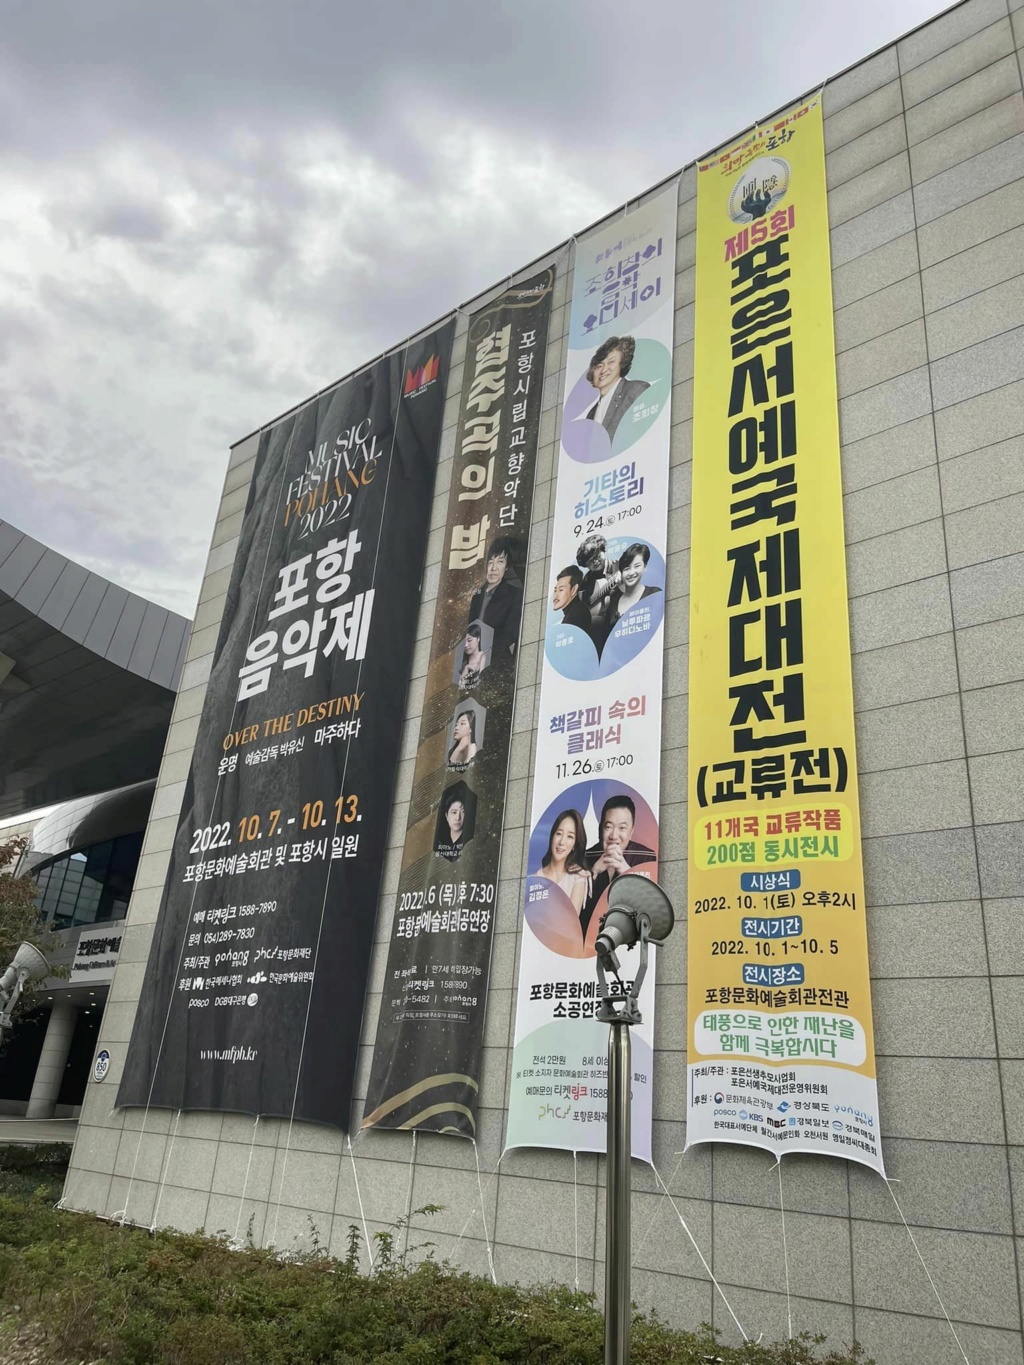 第五回2022圃隱書藝國際大展在韓國浦項會館揭幕 - 頁 2 31066410